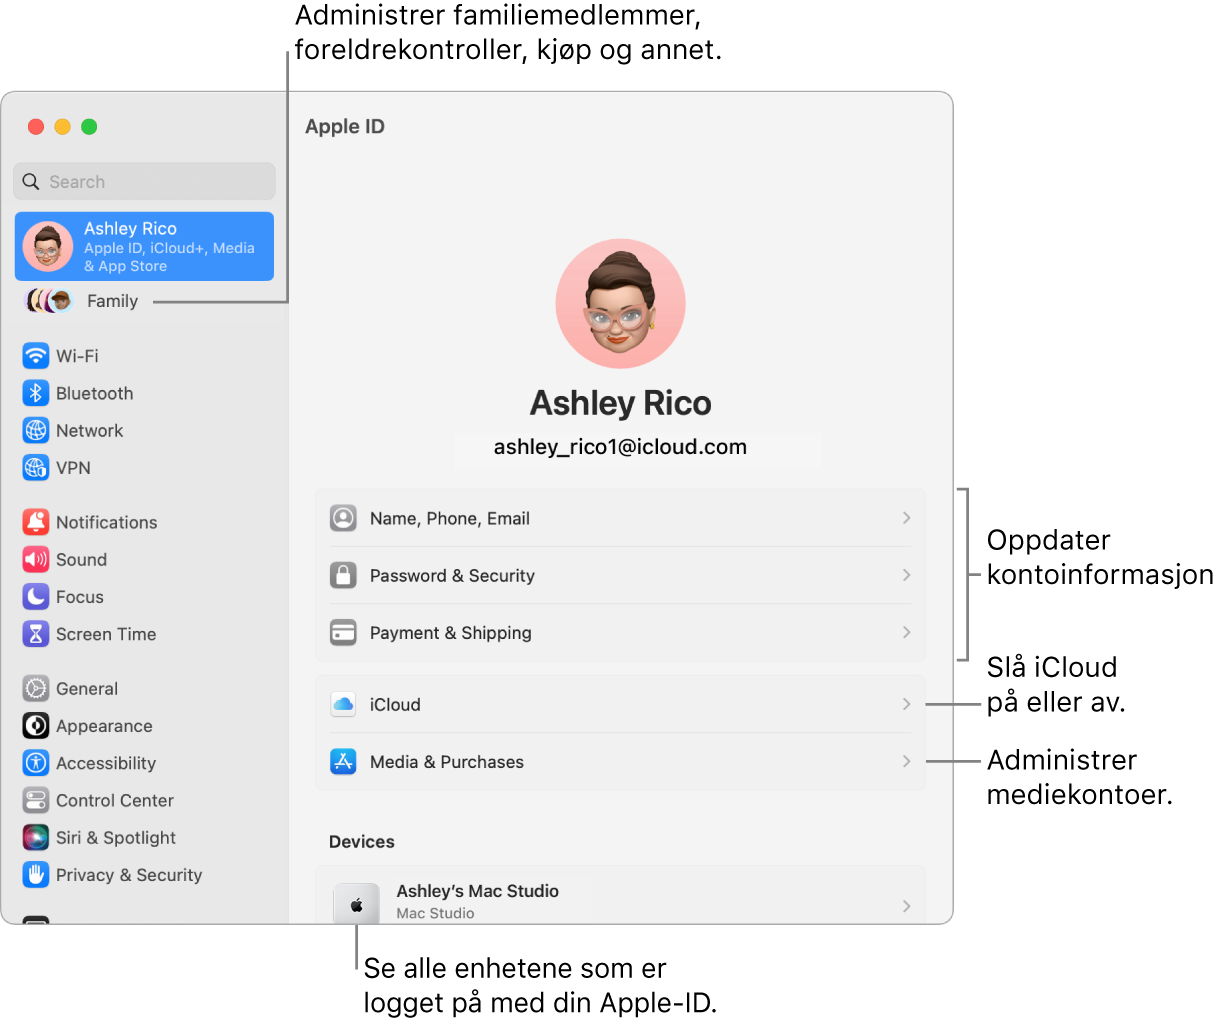 Apple-ID-innstillinger i Systeminnstillinger med forklaringer for hvordan du oppdaterer kontoinformasjon, slår av eller på iCloud-funksjoner, administrerer mediekontoer, og Familie, der du kan administrere familiemedlemmer, foreldrekontroller, kjøp og mer..